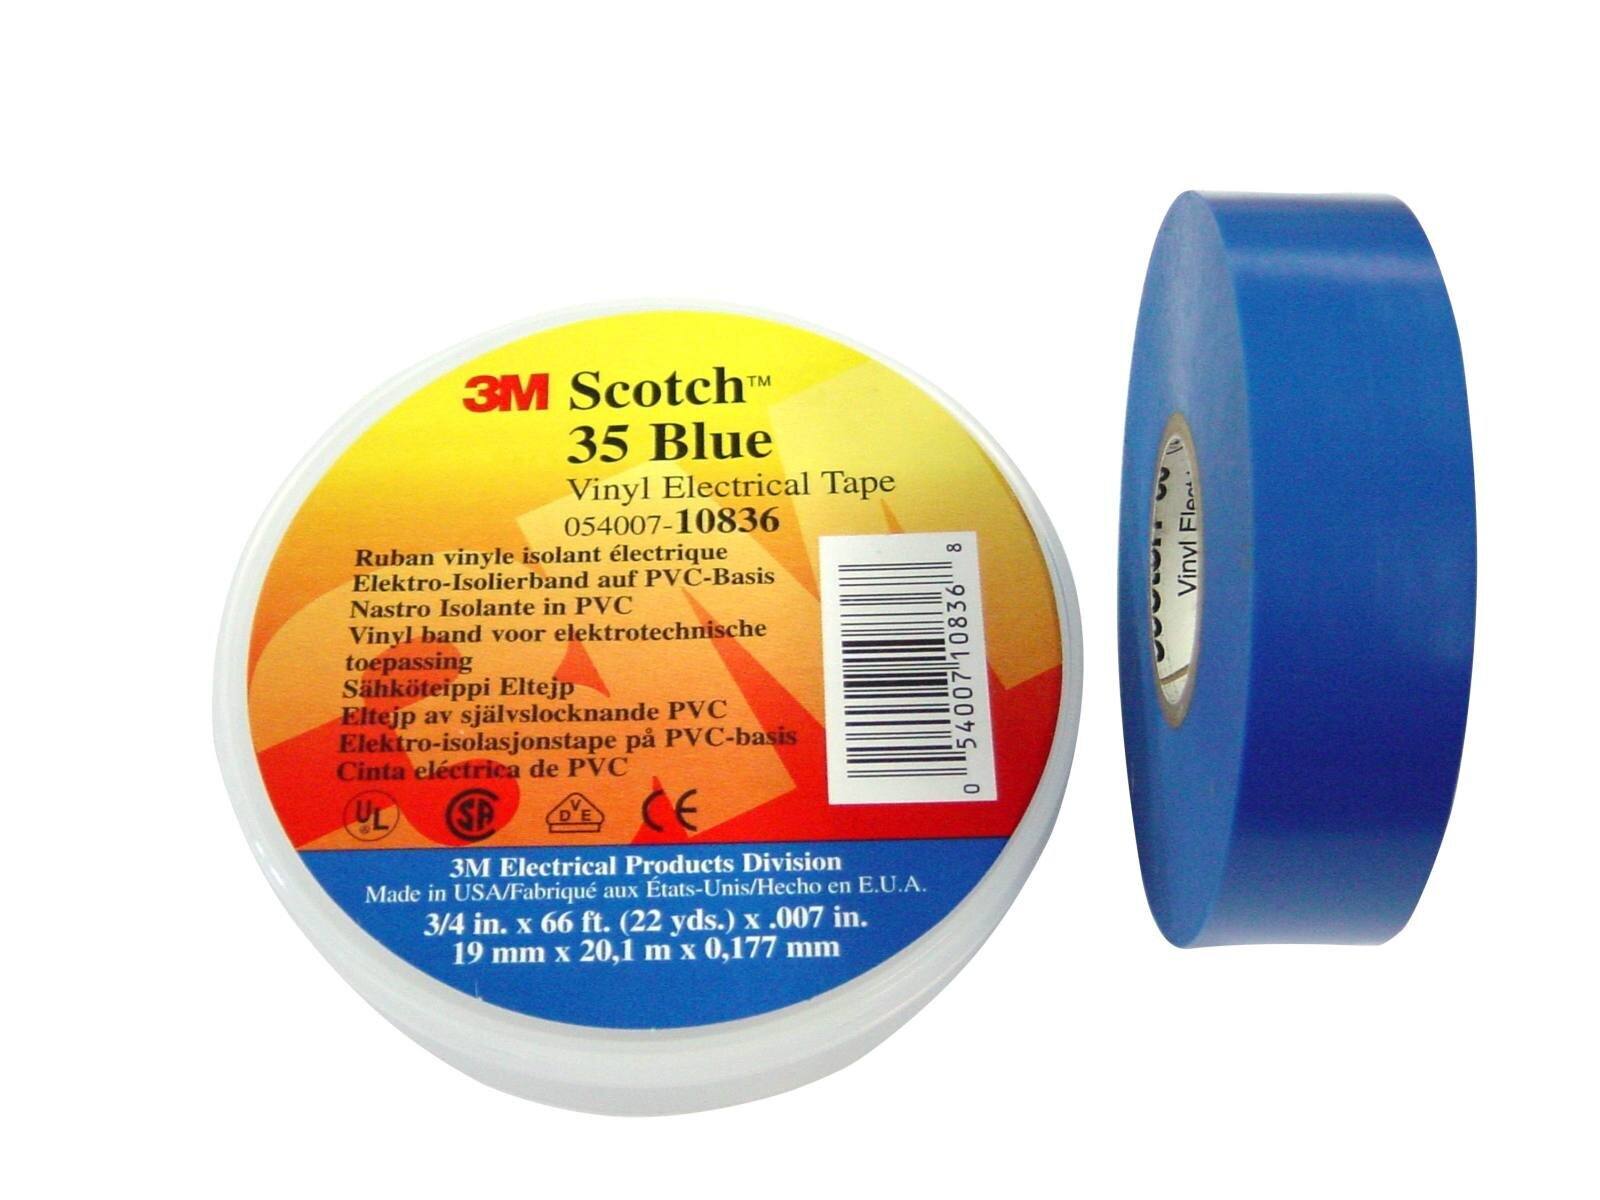 Nastro isolante elettrico in vinile 3M Scotch 35, blu, 19 mm x 20 m, 0,18 mm